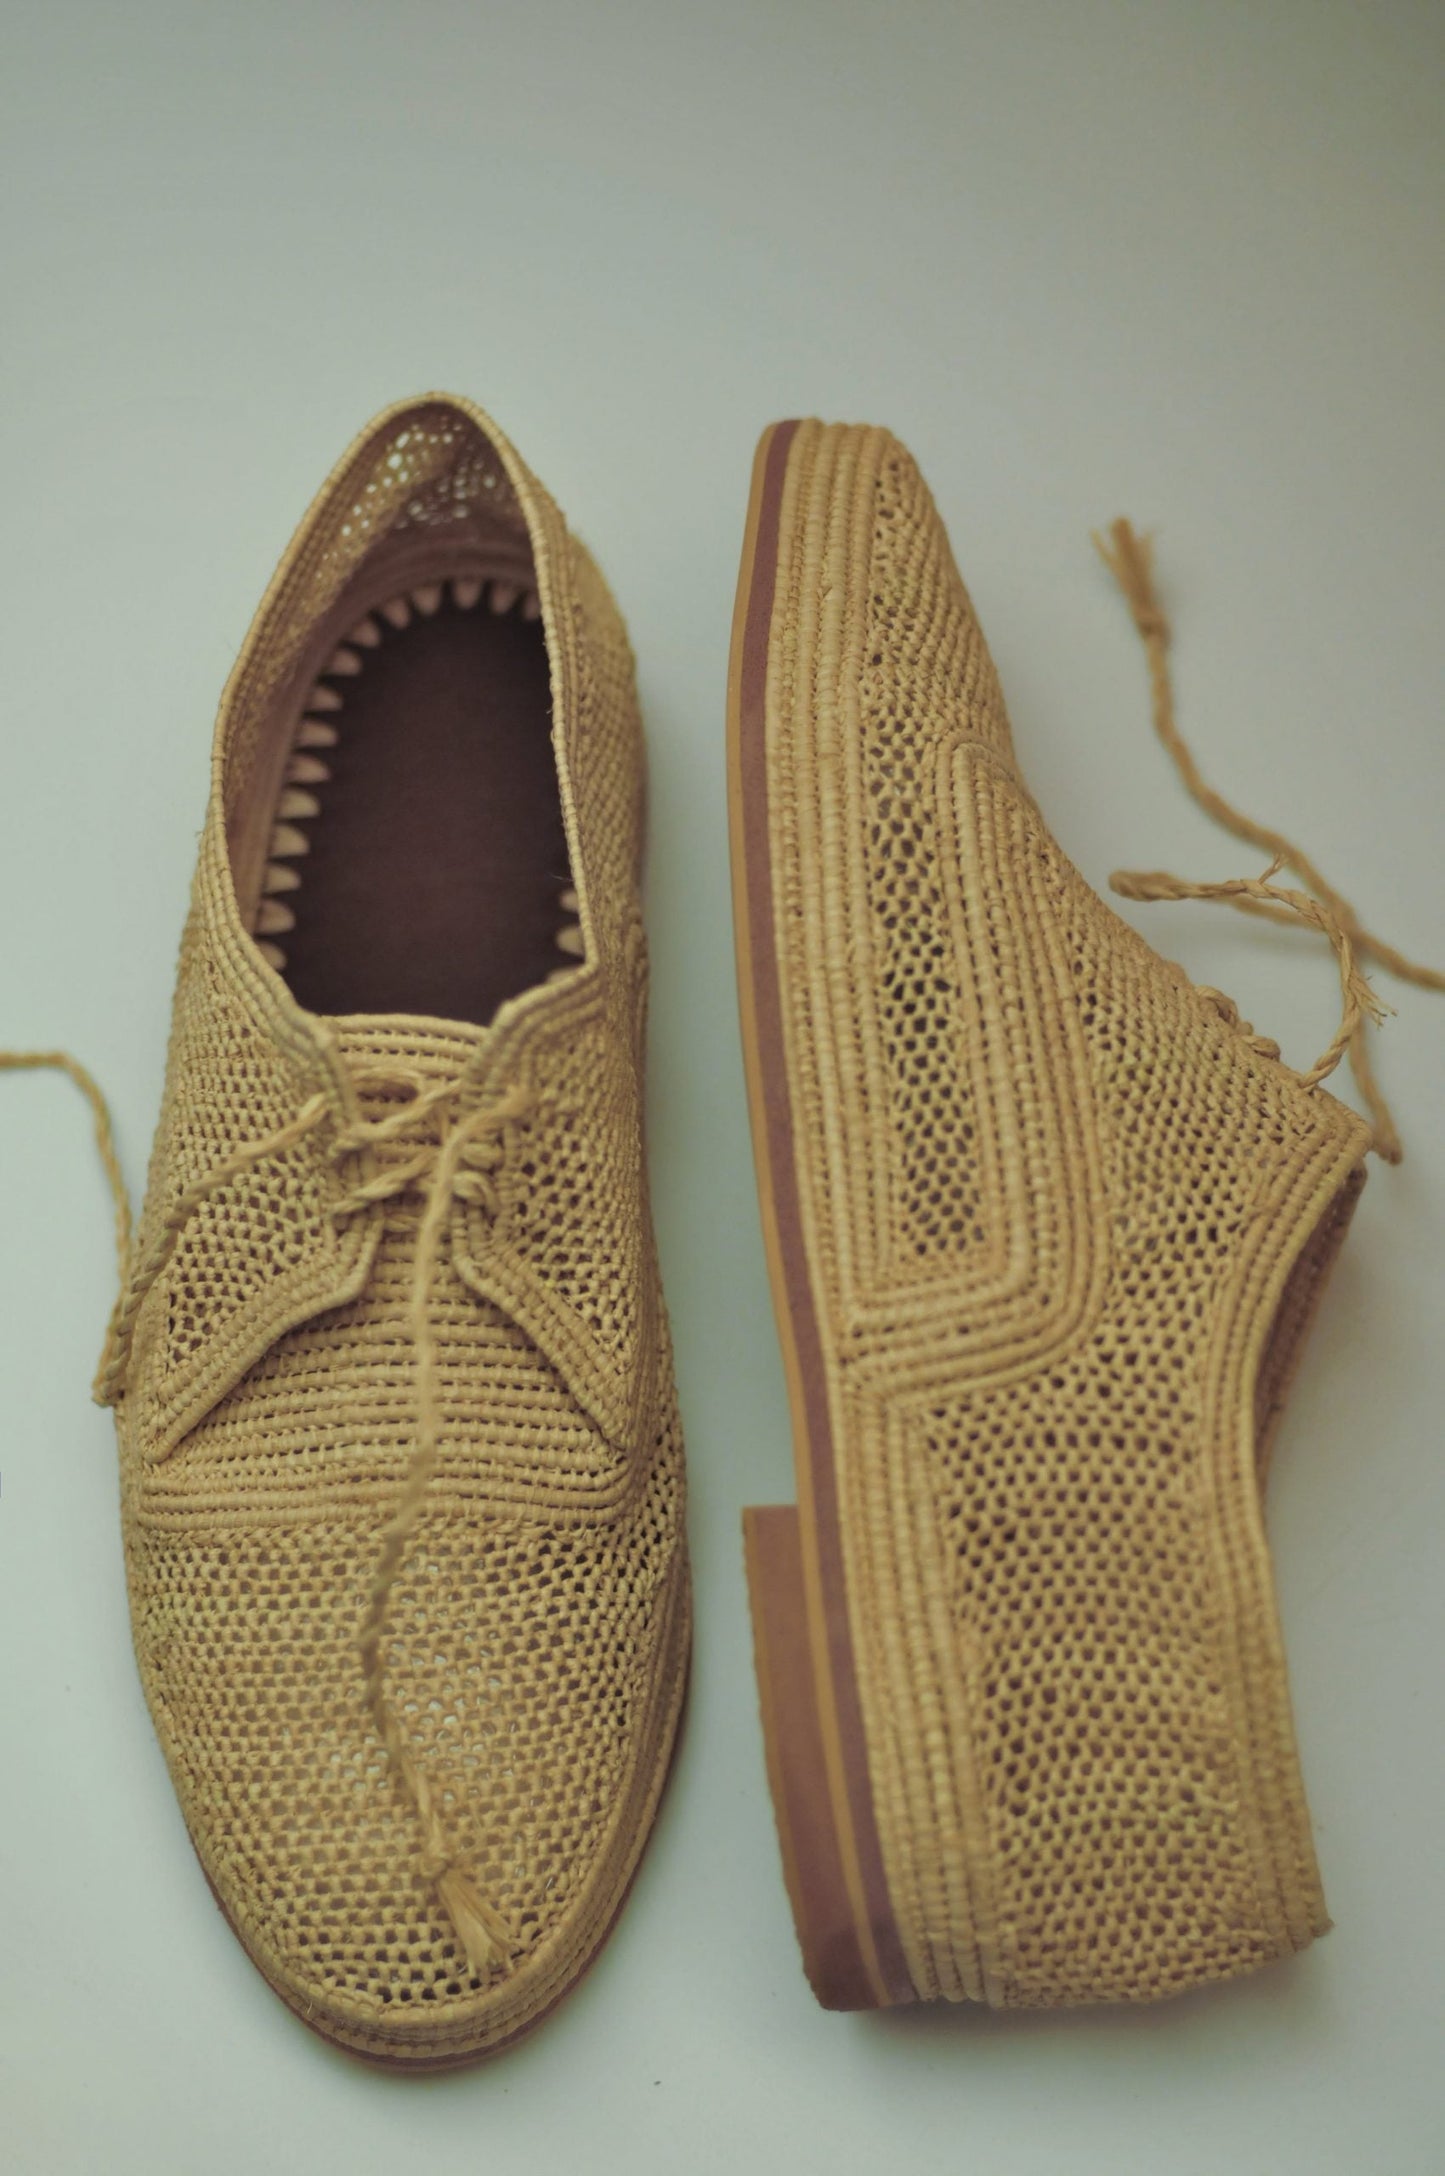 Clemente shoe